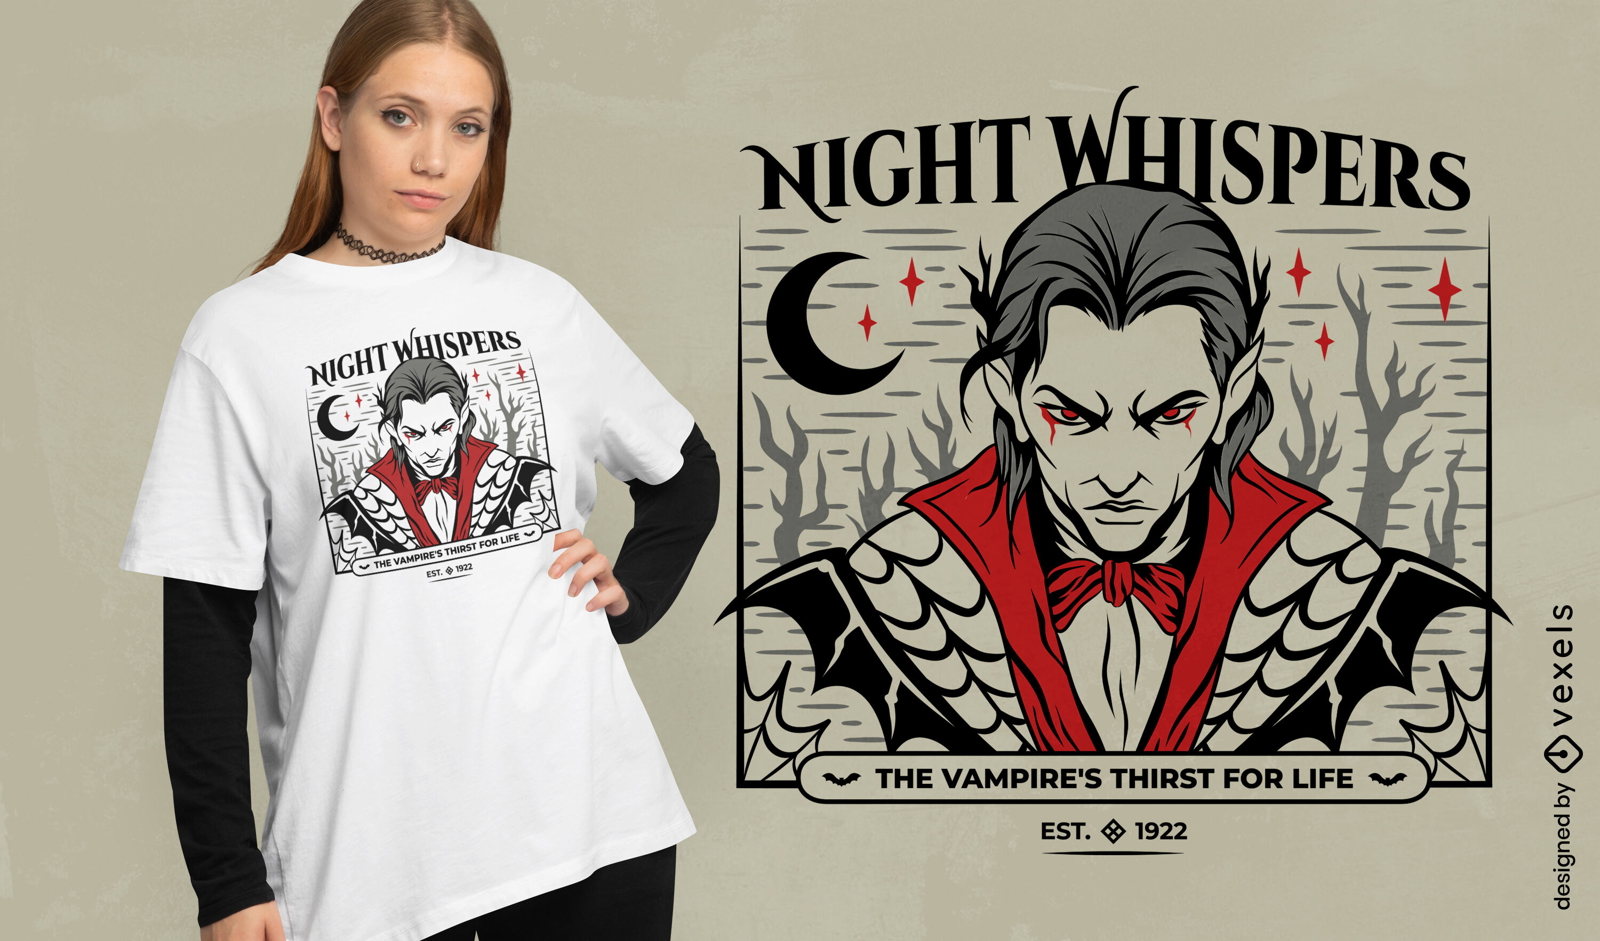 Vampire night whispers t-shirt design